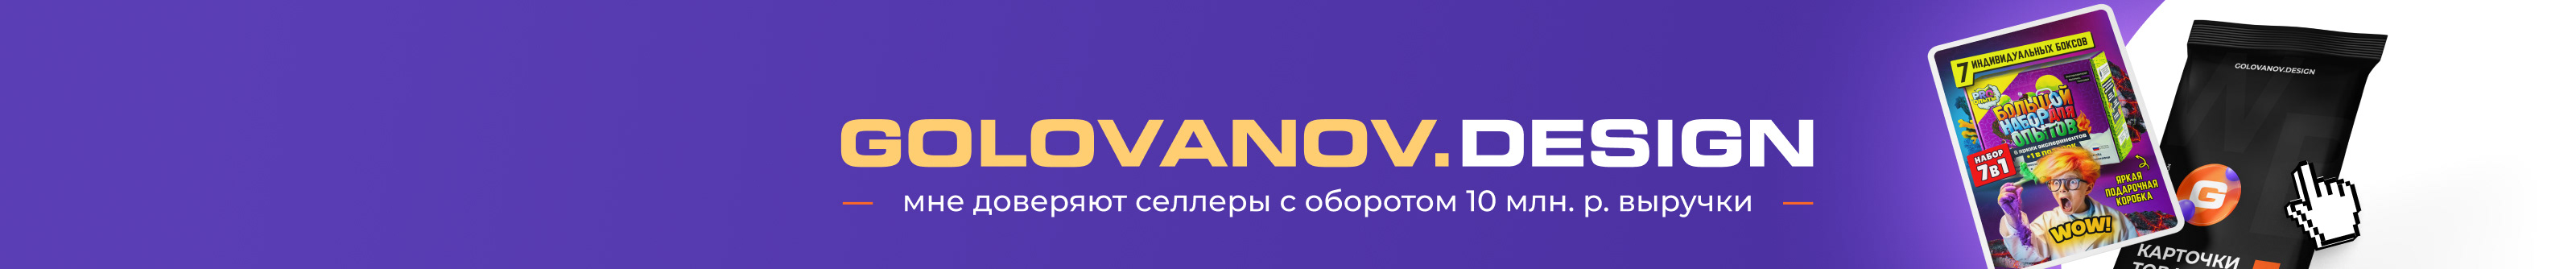 Сергей Голованов's profile banner